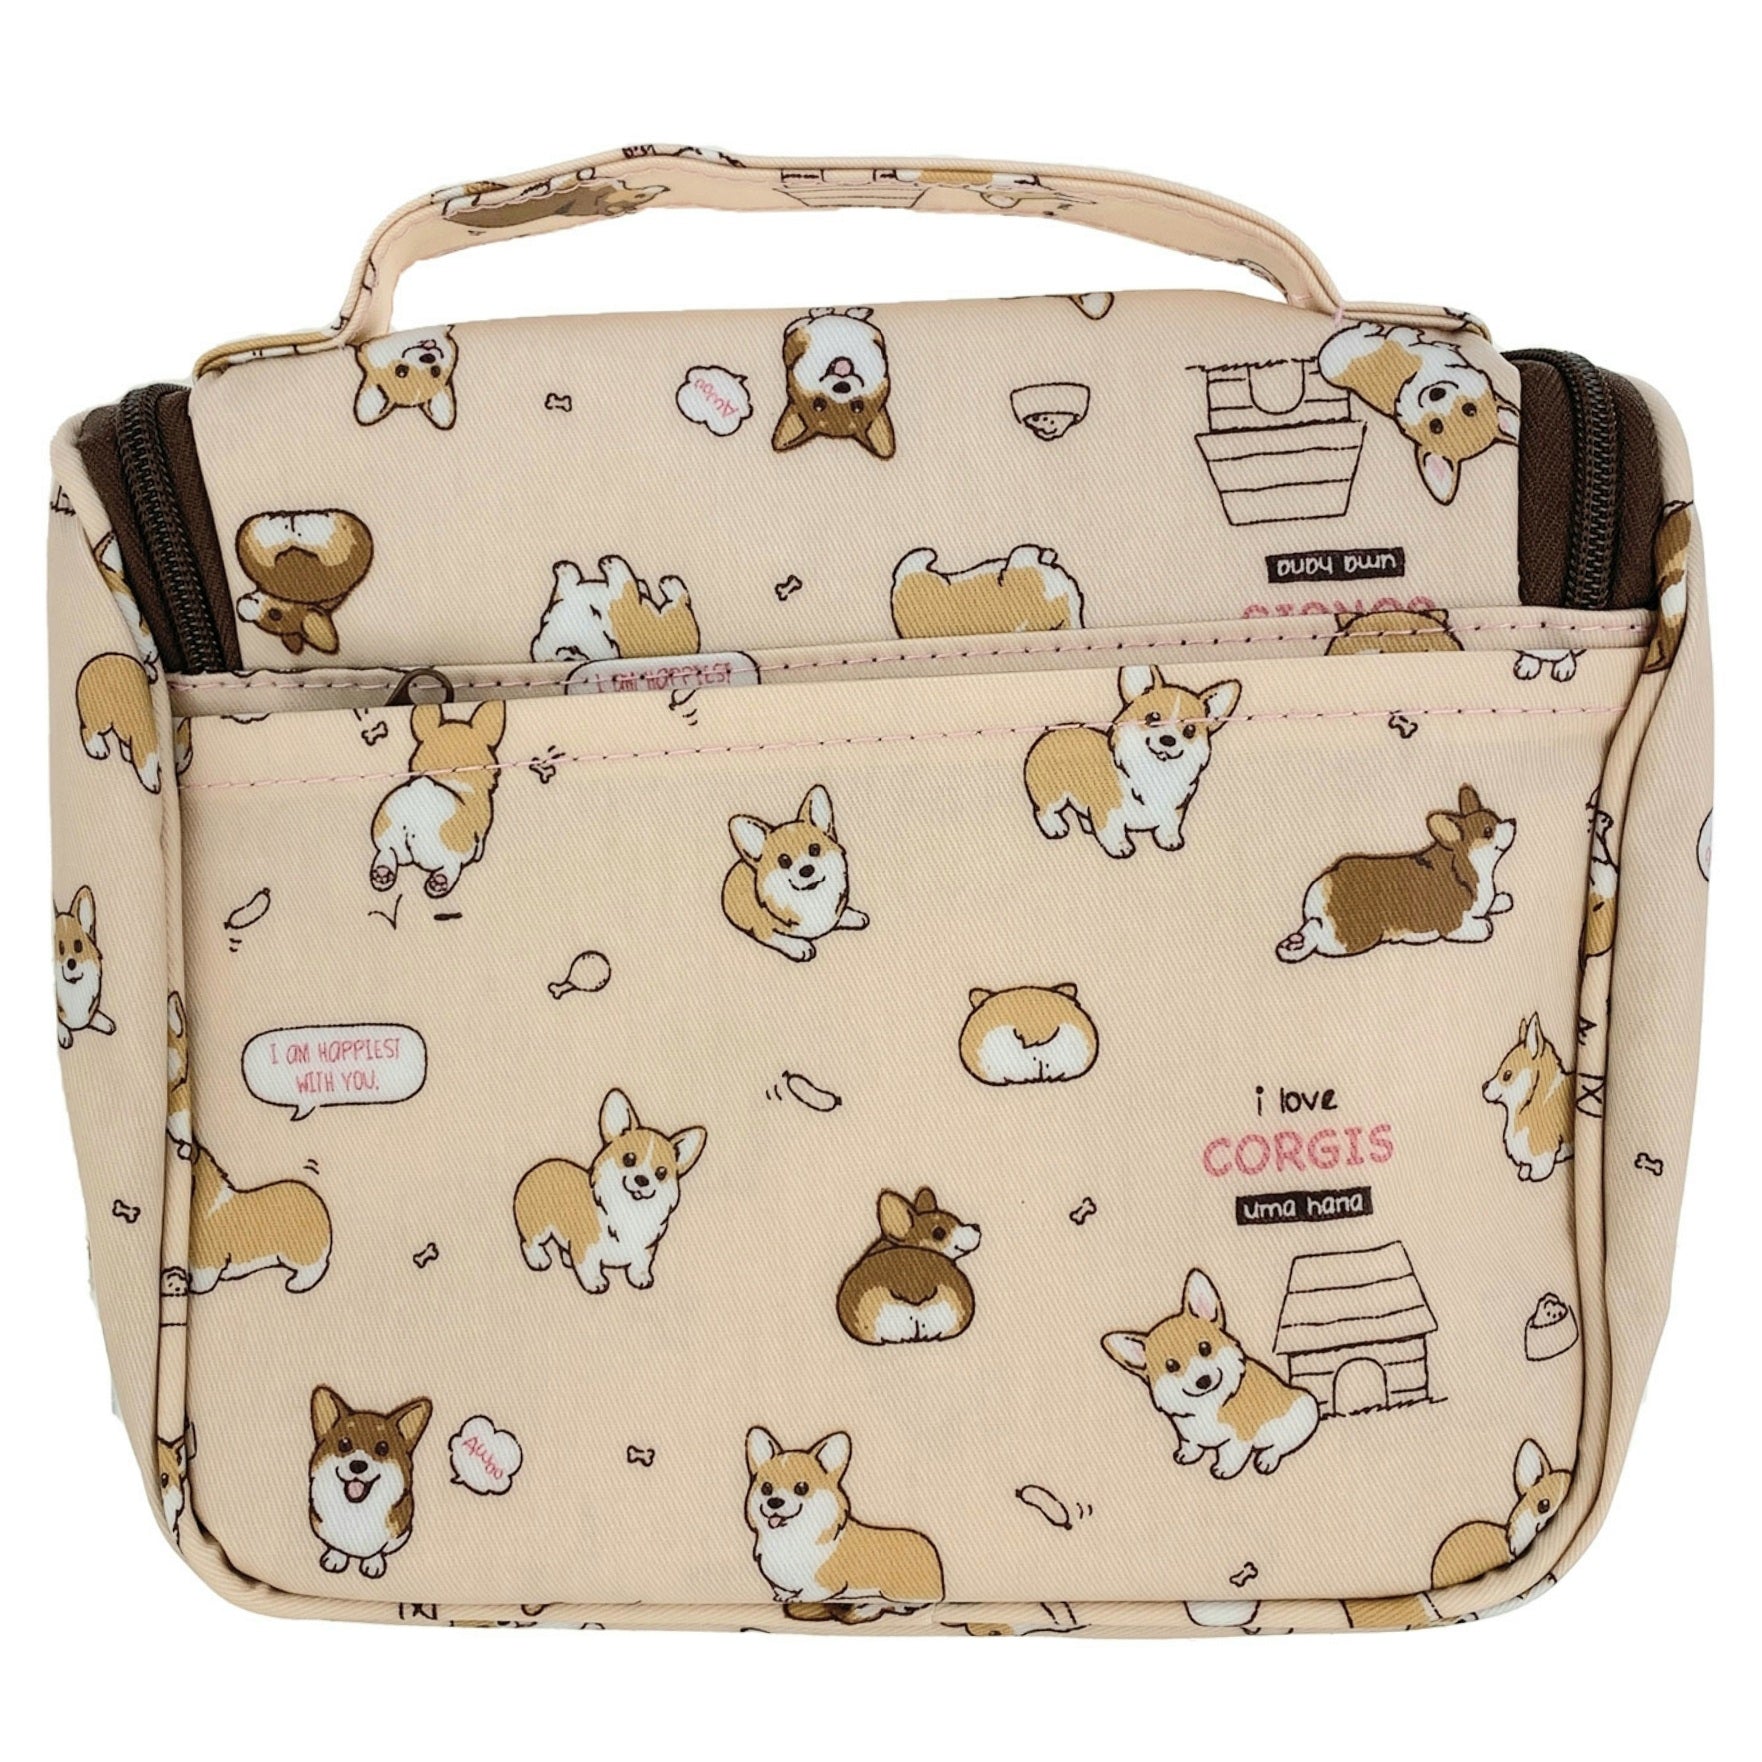 Peach Corgi Puppy Toiletry Bag